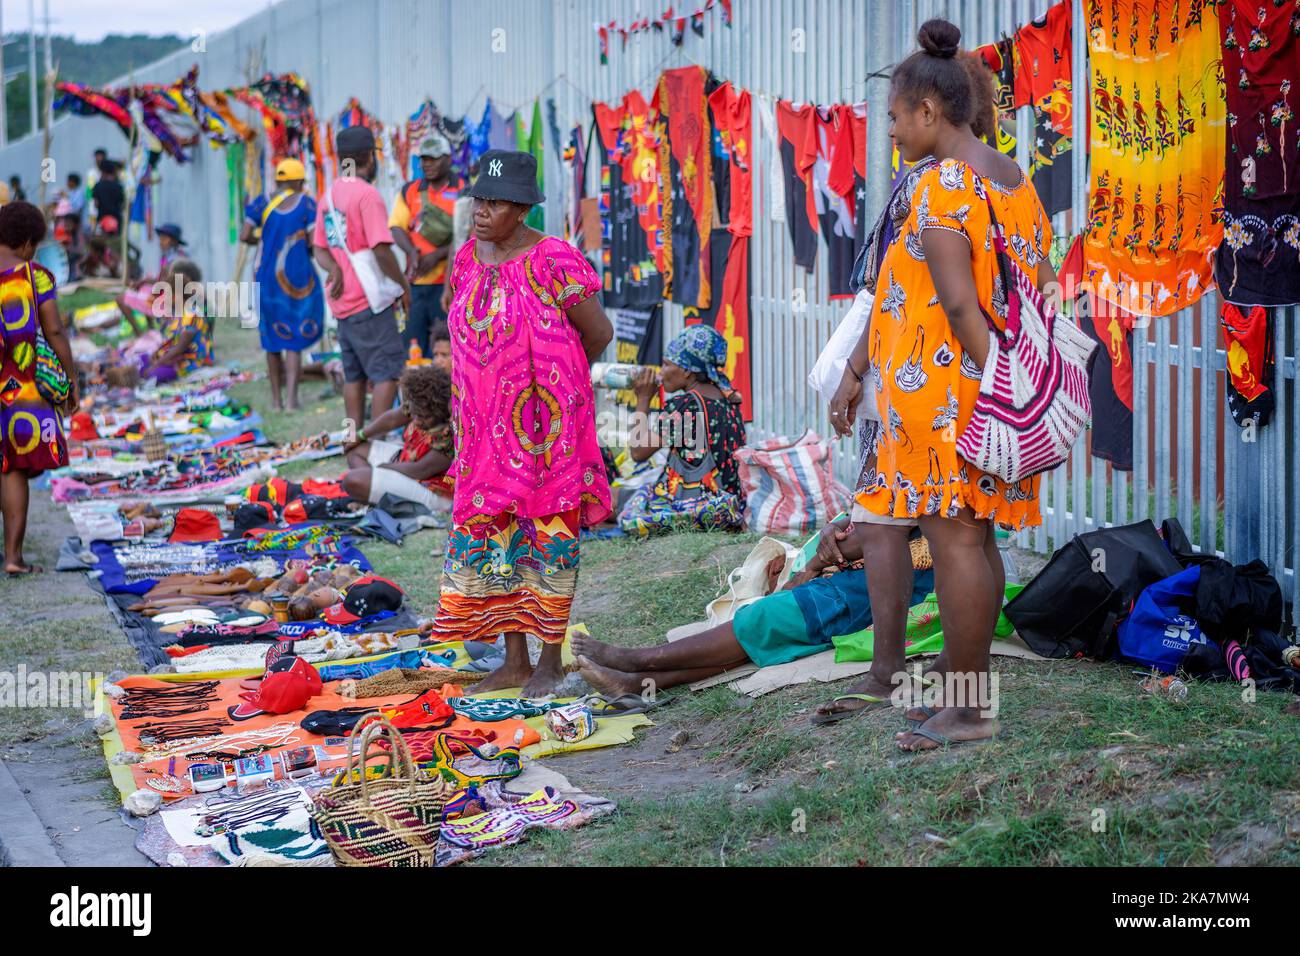 Les touristes des bateaux de croisière achètent des marchandises sur le marché en plein air dans la rue à l'extérieur du port de Rabaul. Rabaul, Papouasie-Nouvelle-Guinée Banque D'Images